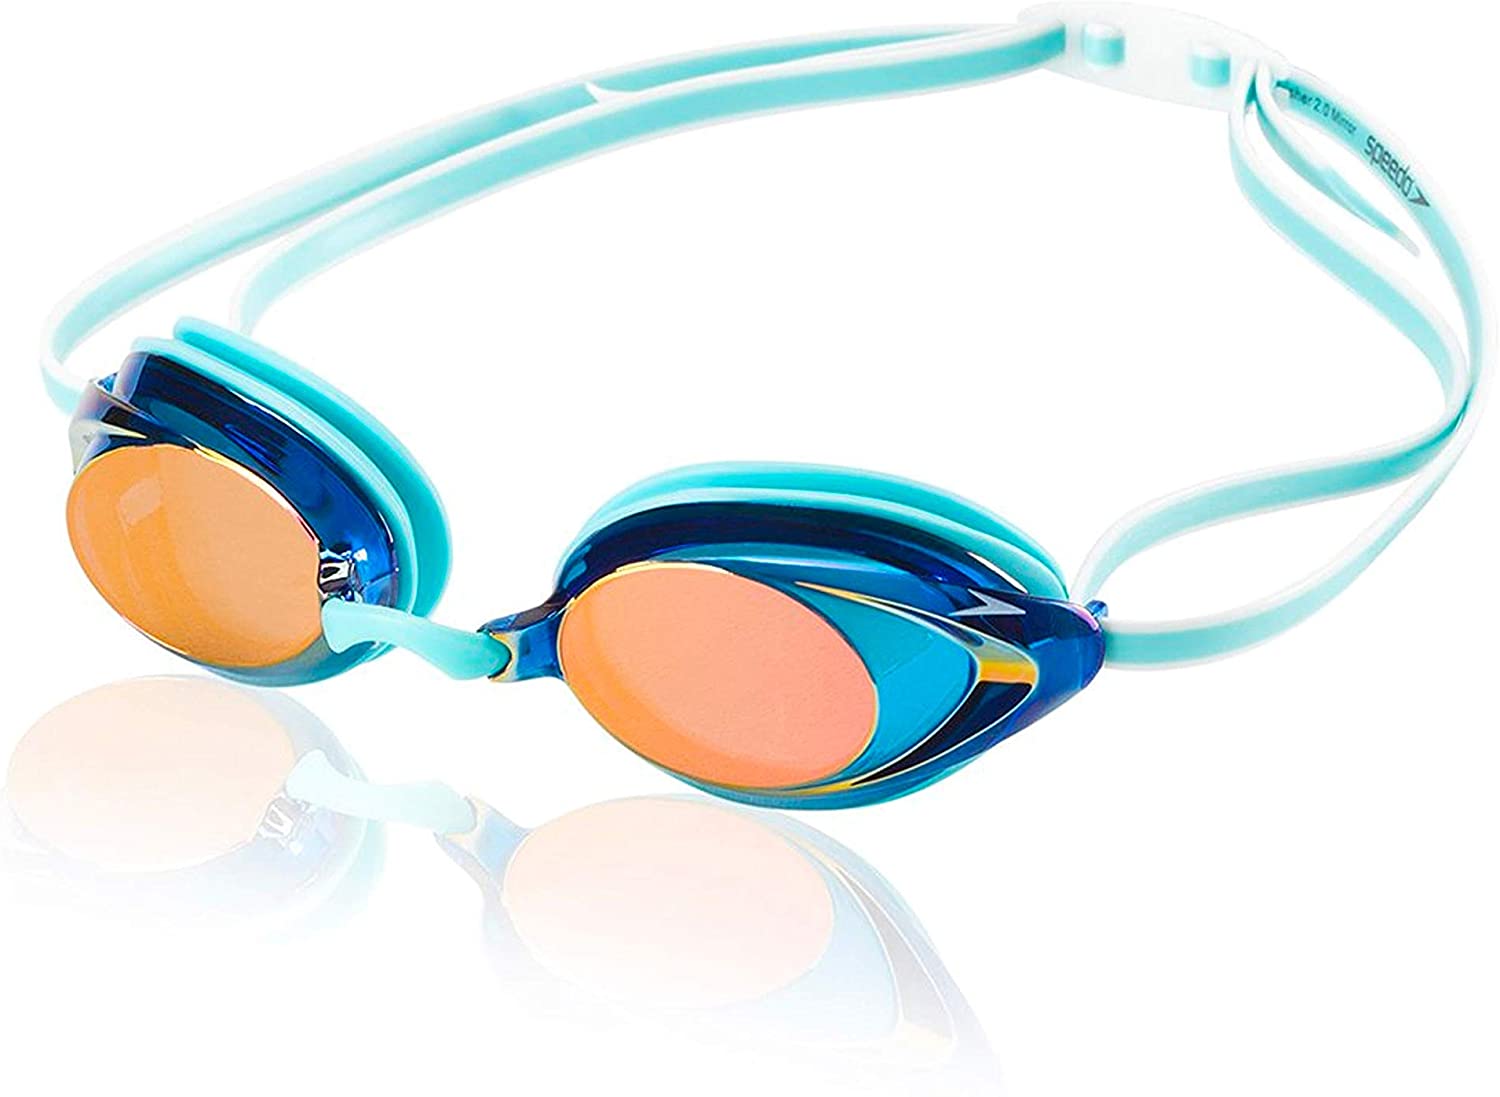 
Speedo Vanquisher 2.0 Swimming Goggles
